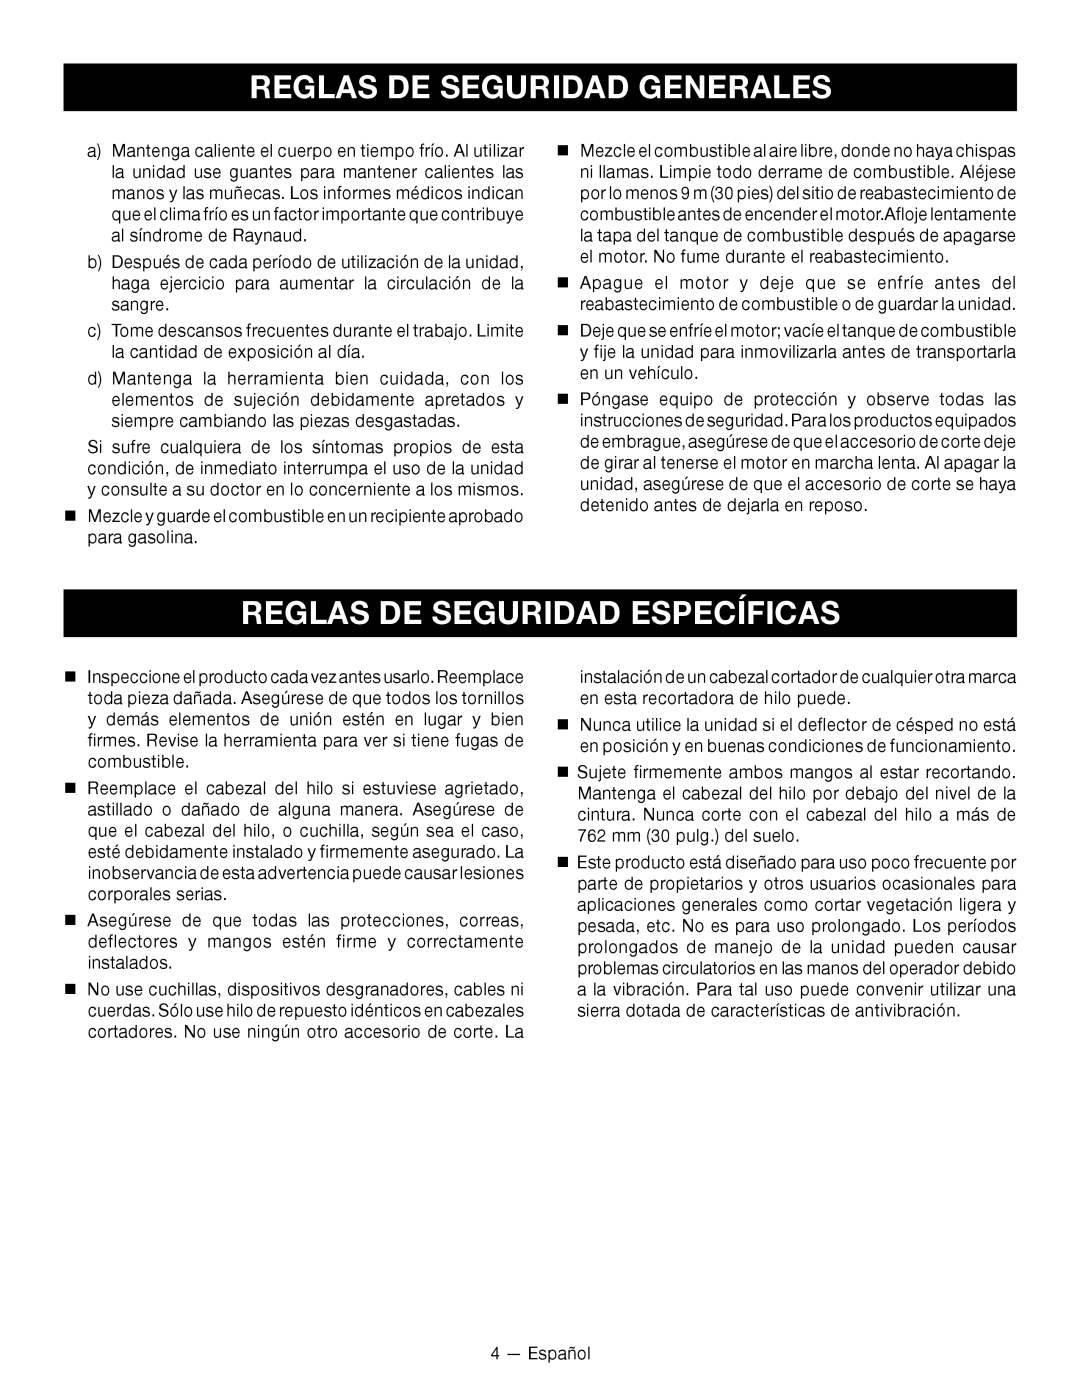 Ryobi RY28140, RY28120 manuel dutilisation Reglas De Seguridad Específicas, Reglas De Seguridad Generales, Español 